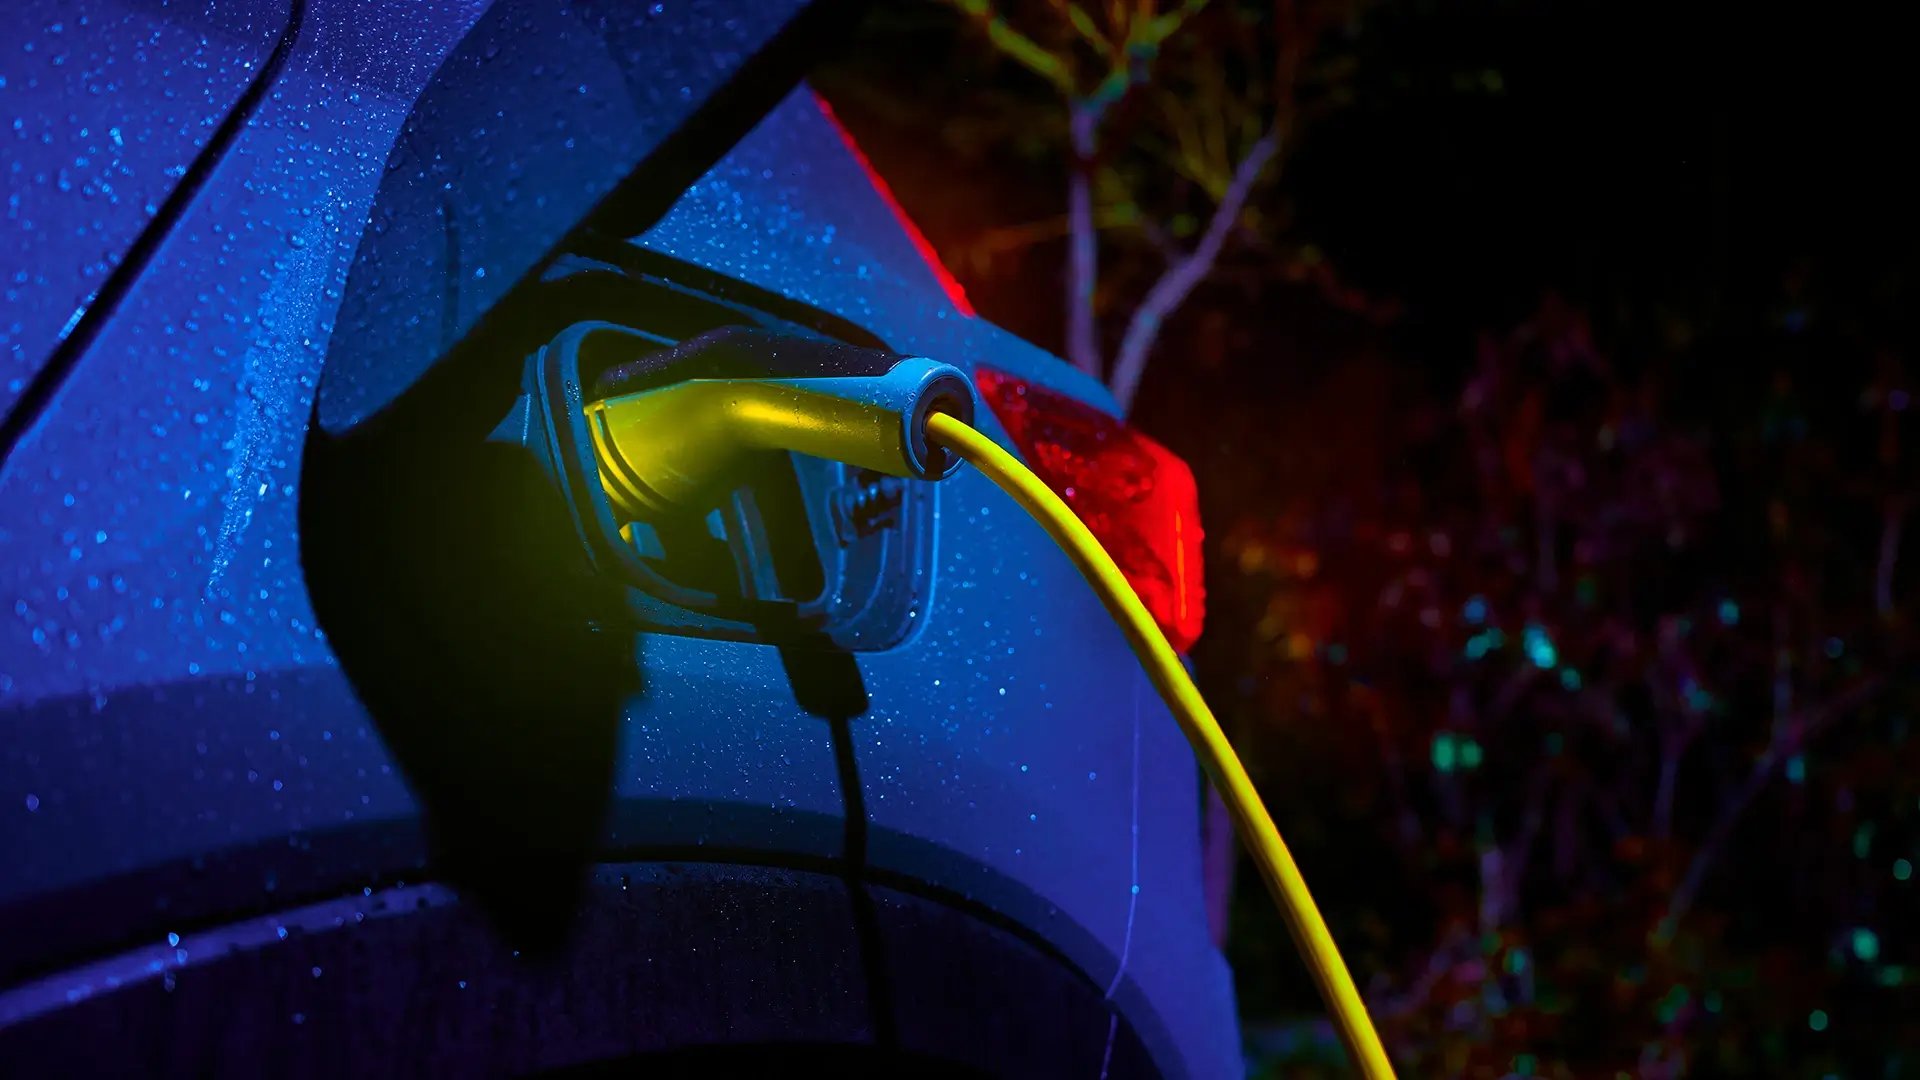 Laddning av elbil nattetid med regndroppar på bilen